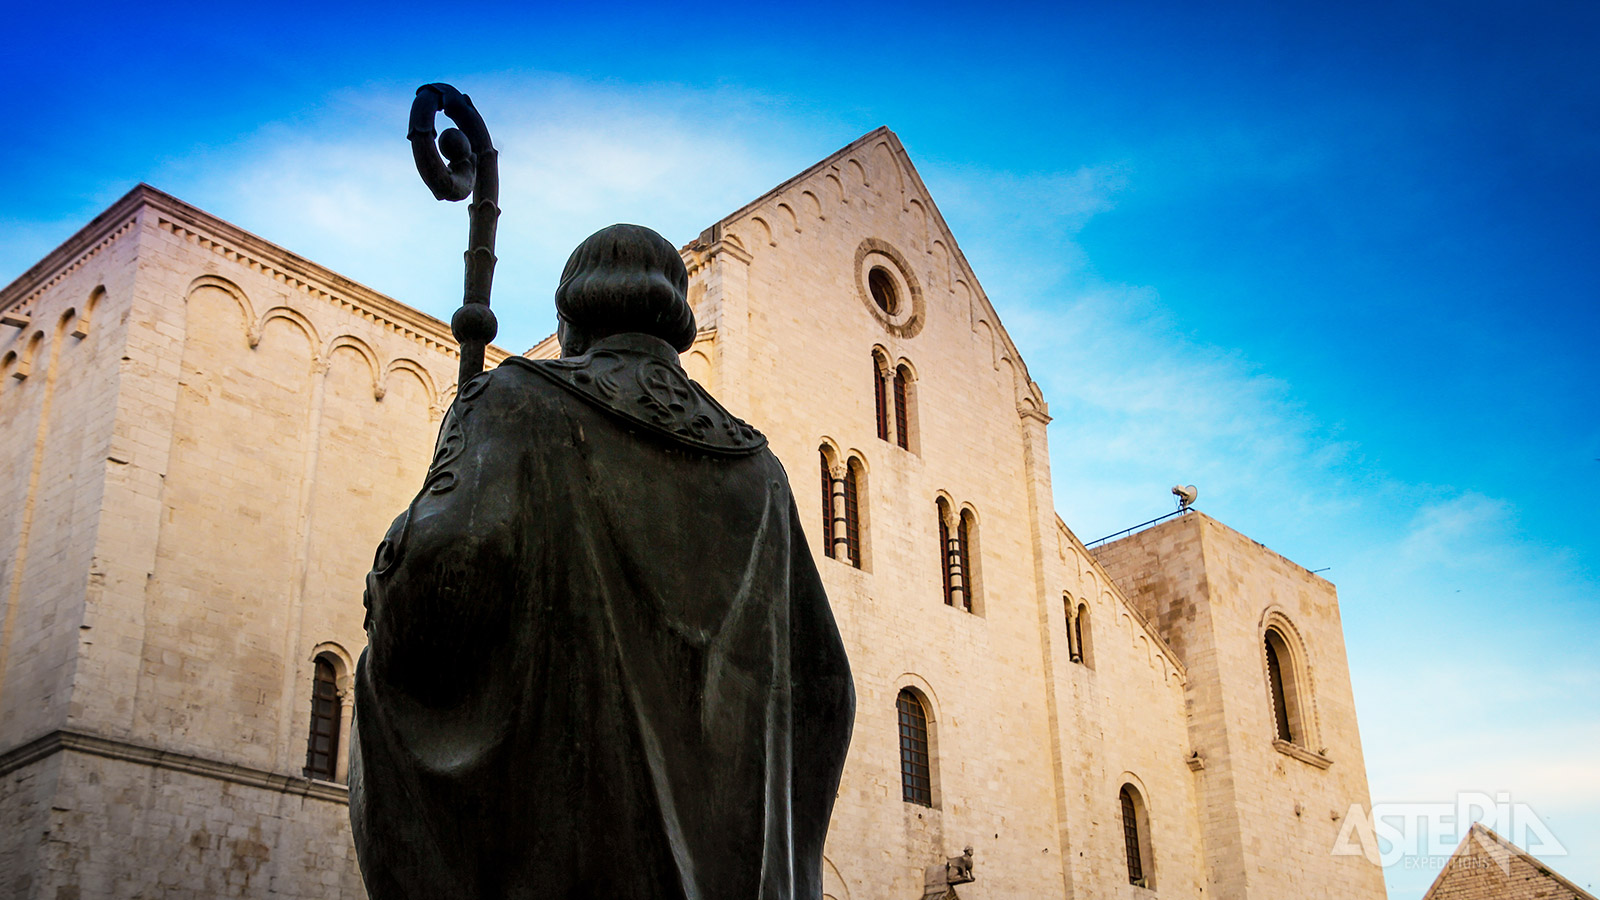 Via kronkelende steegjes en pleintjes kom je bij de beschermheilige van Bari: Sint-Nicolaas